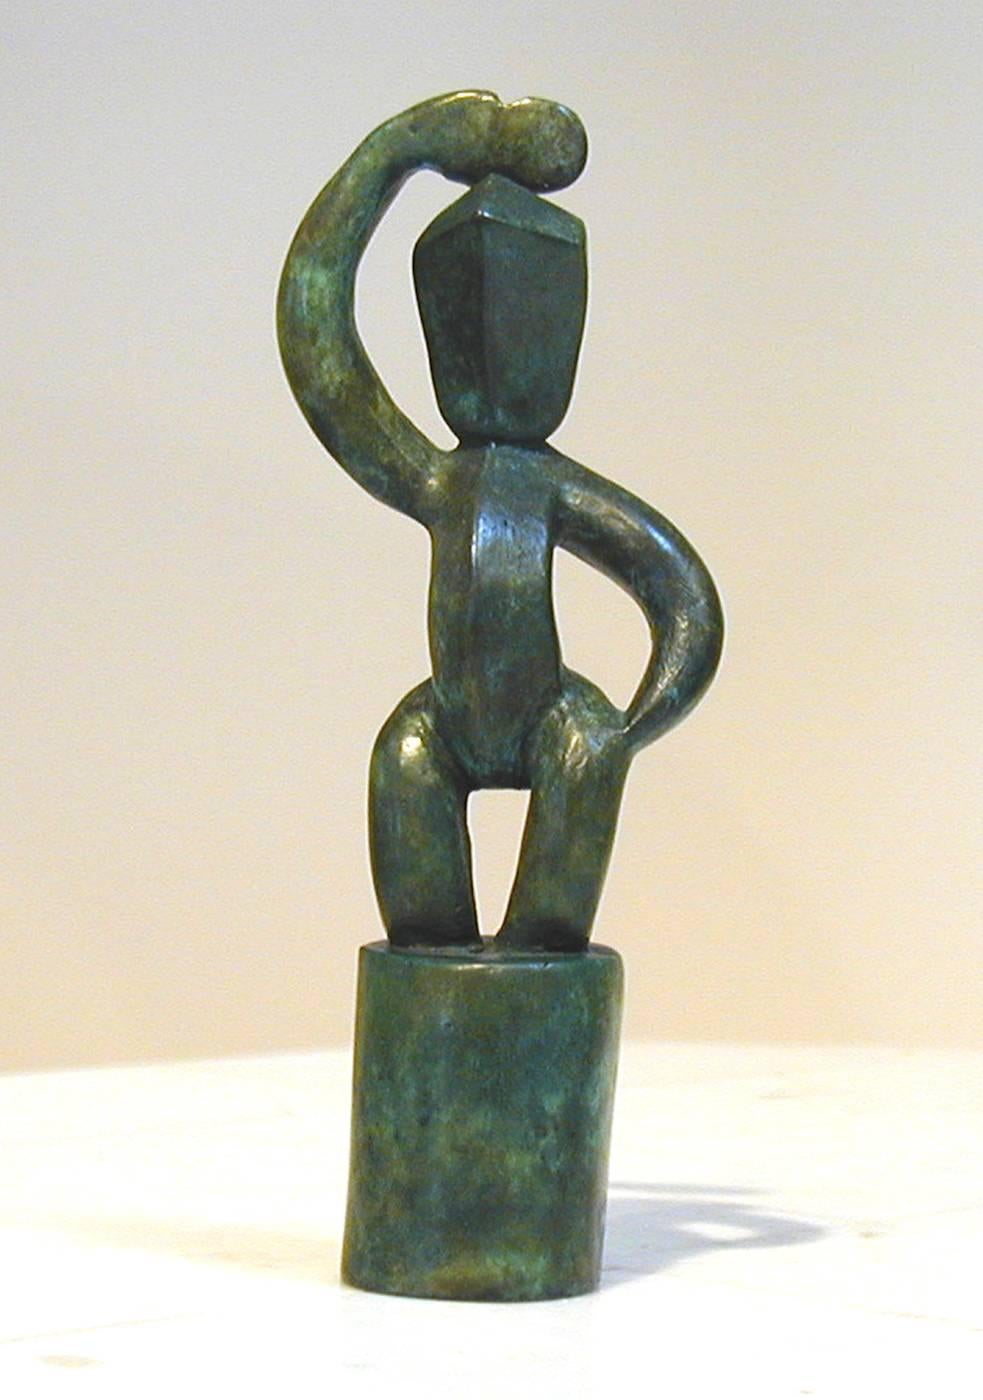 Wi Taepa Figurative Sculpture - E Tu (Stand Tall), contemporary Maori sculpture, green patina, warrior figure